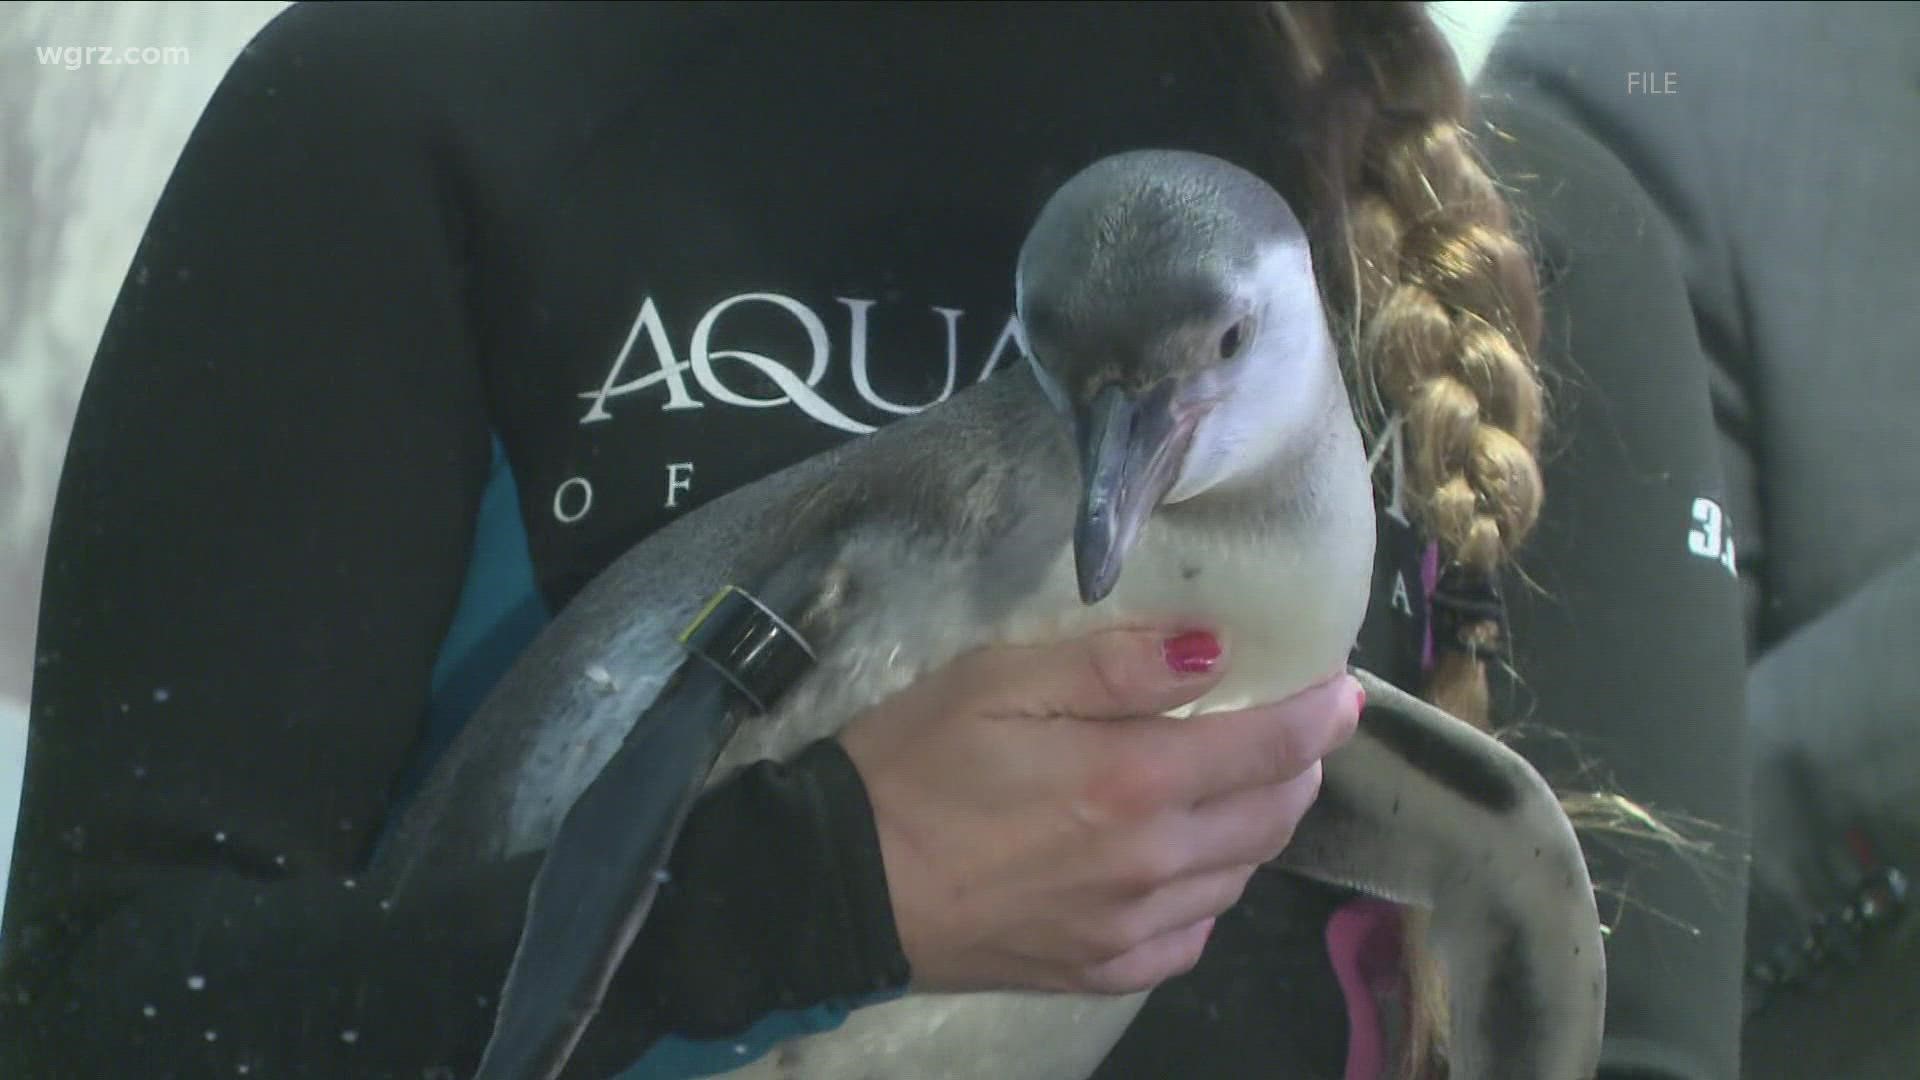 Penguin encounters at Aquarium of Niagara suspended for now